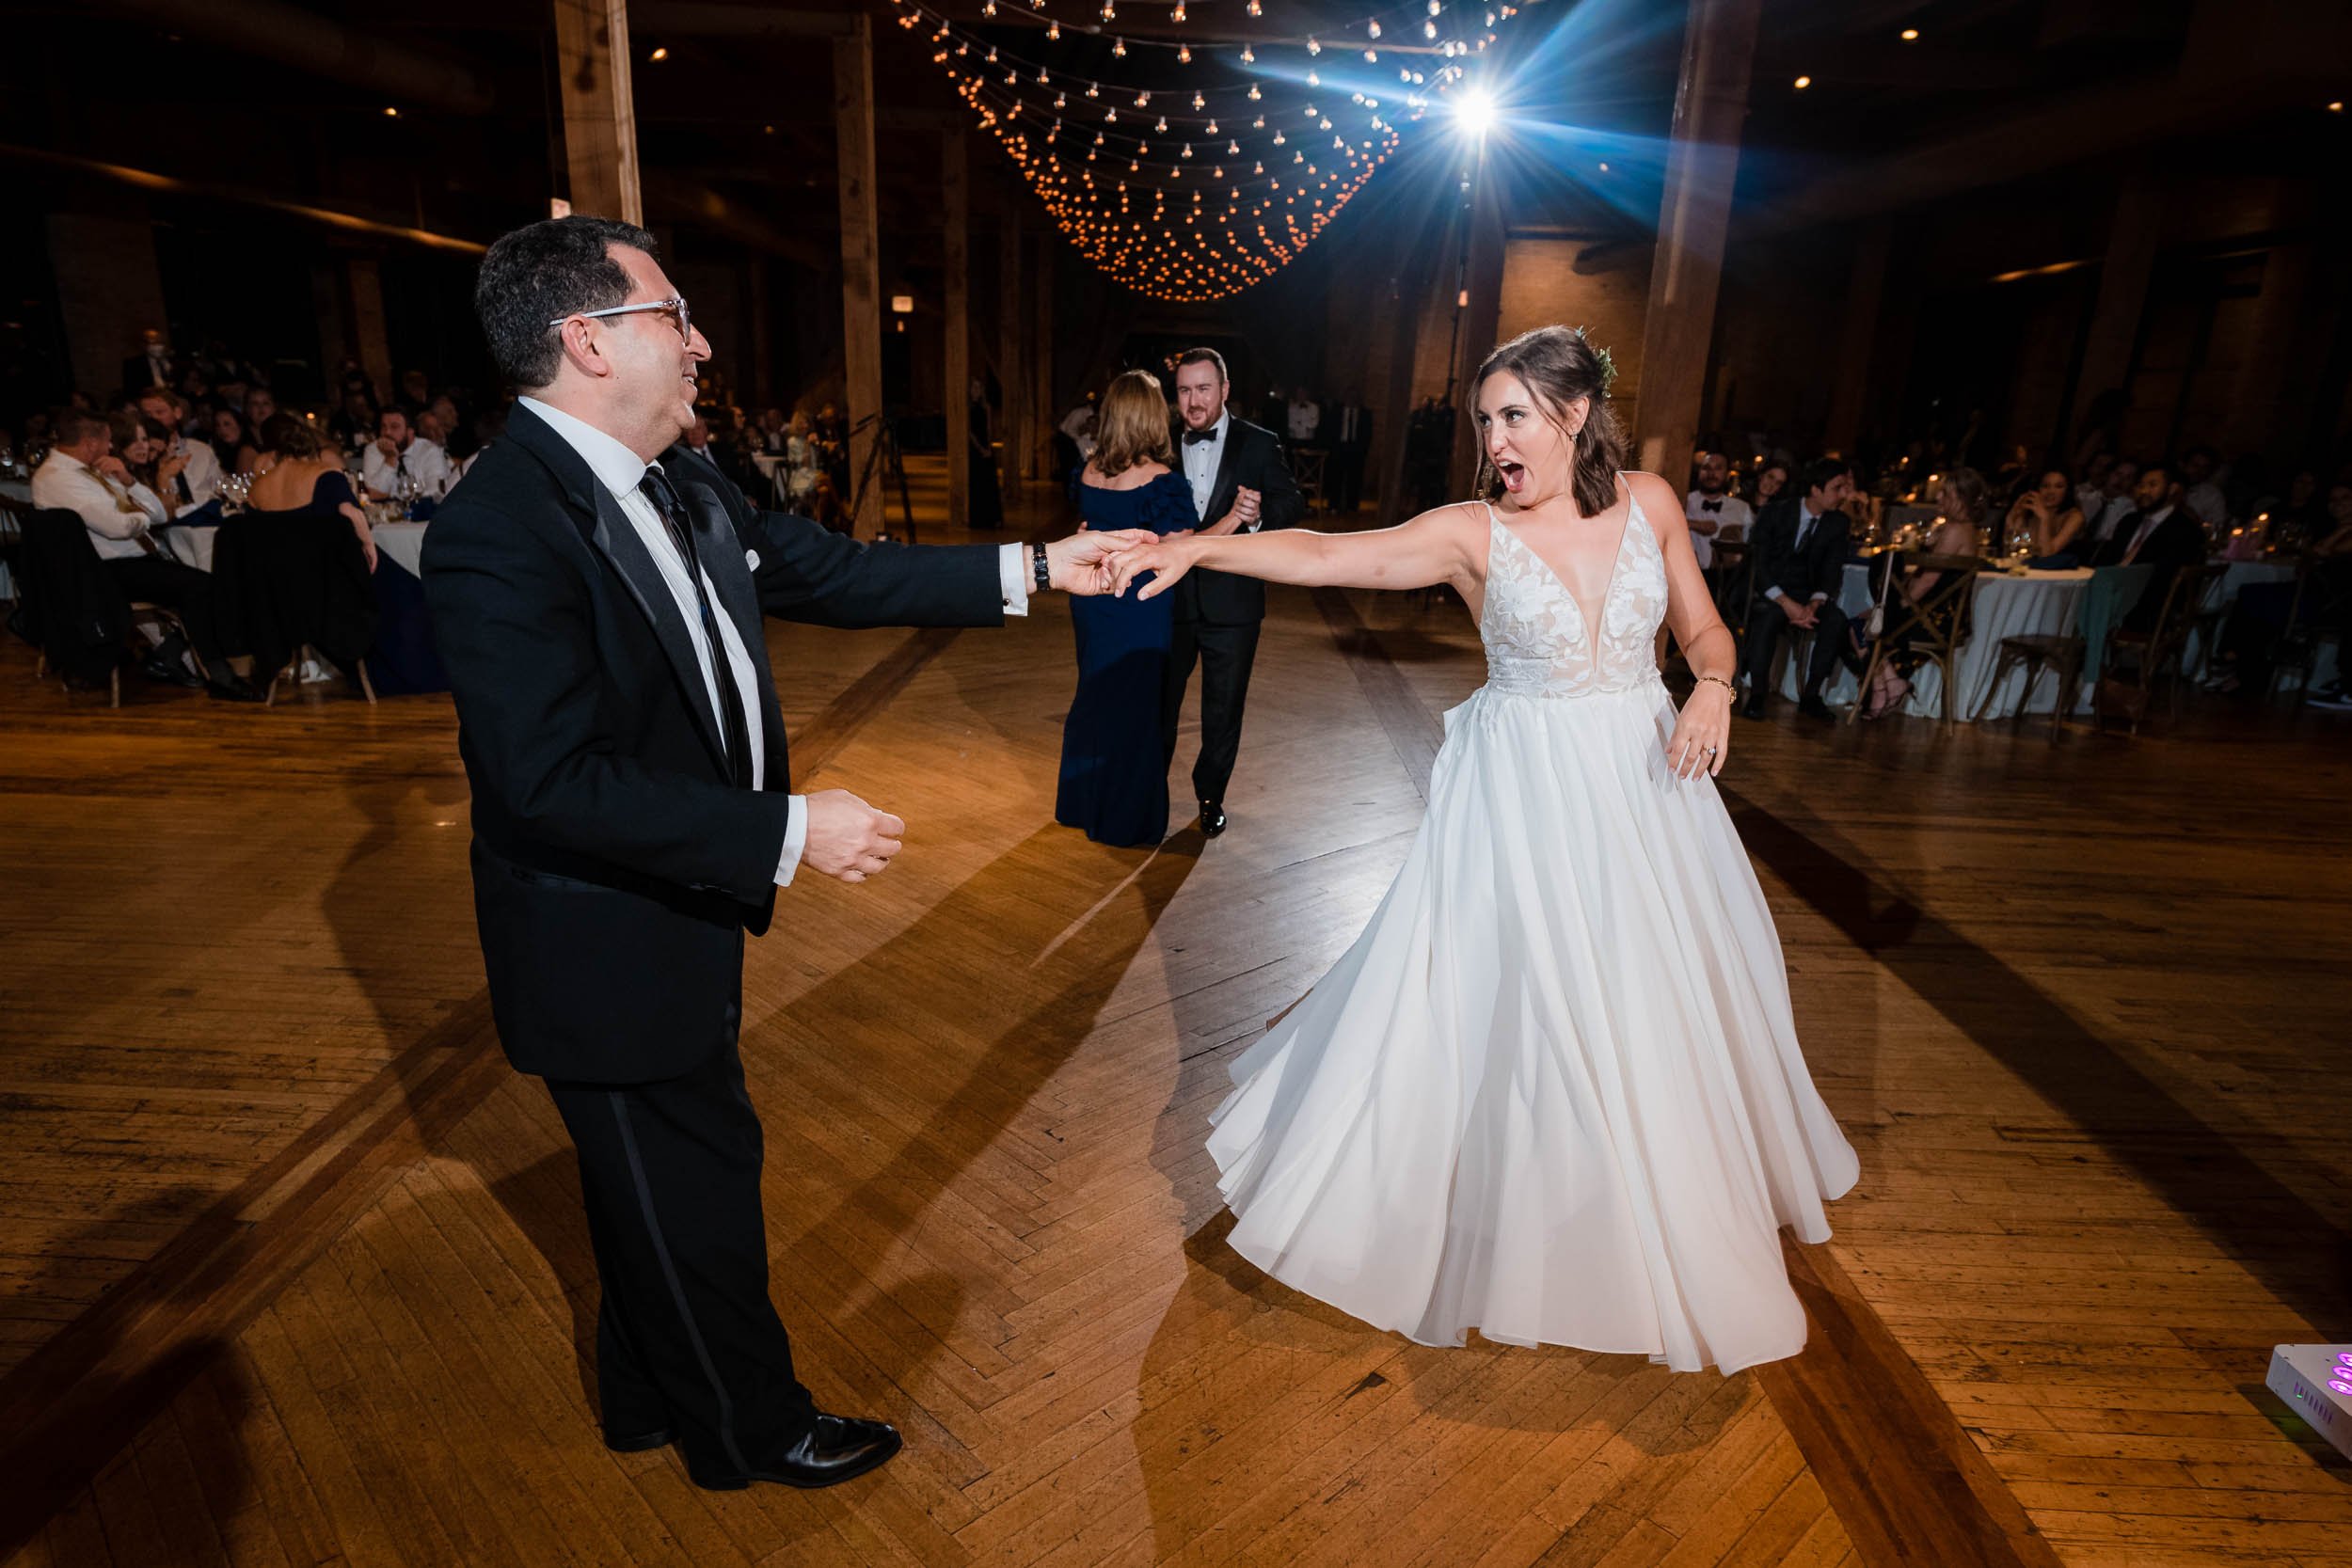 Bridgeport Art Center | Indoor Wedding Reception | Chicago IL